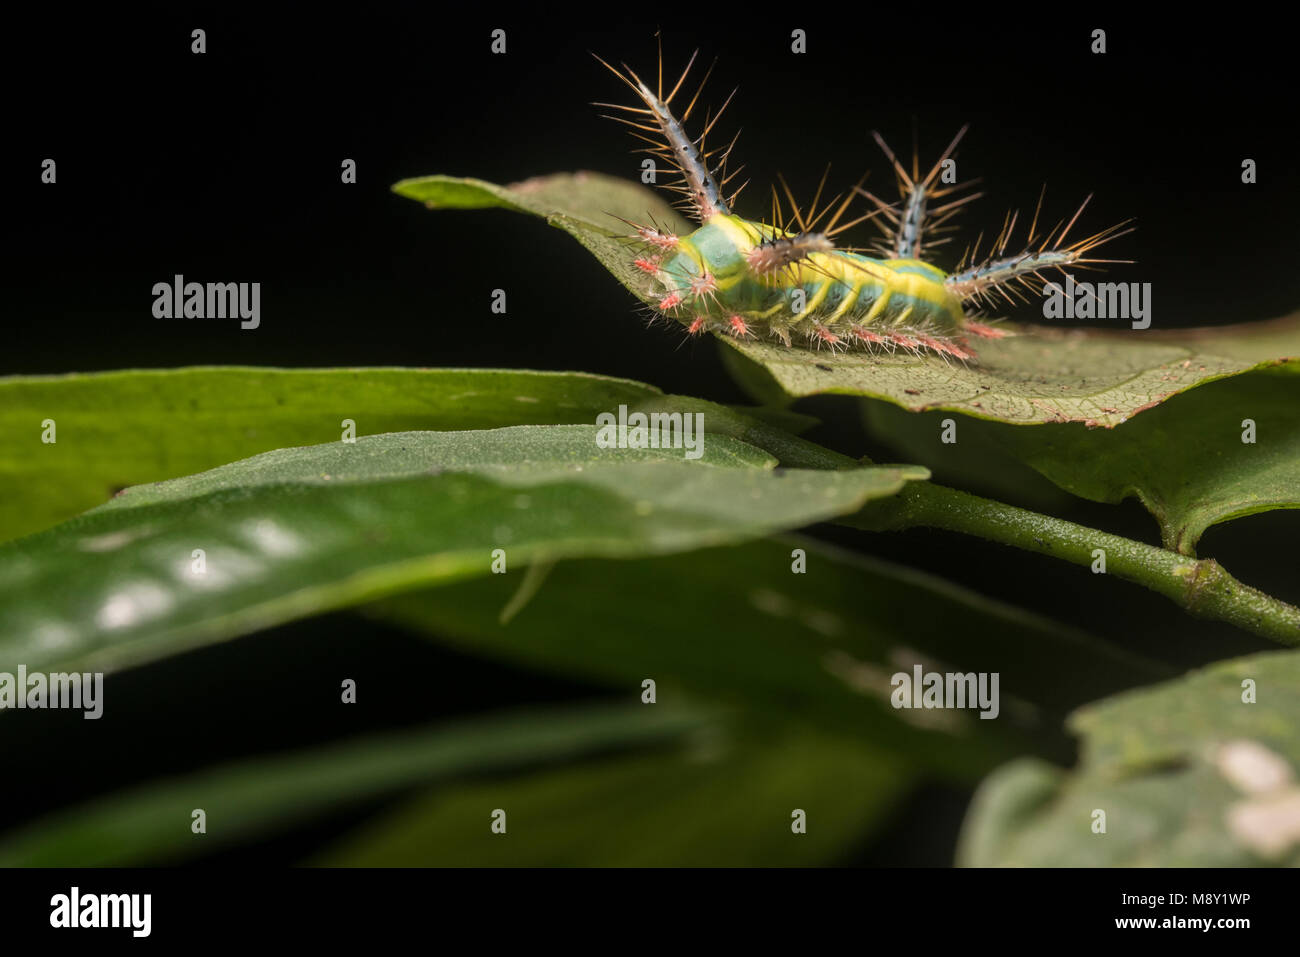 Ein Stechen slug Motte Caterpillar, die hübschen Farben potentielle Raubtiere weg bleiben wie die Raupe packs einen schmerzhaften Stich warnen. Stockfoto